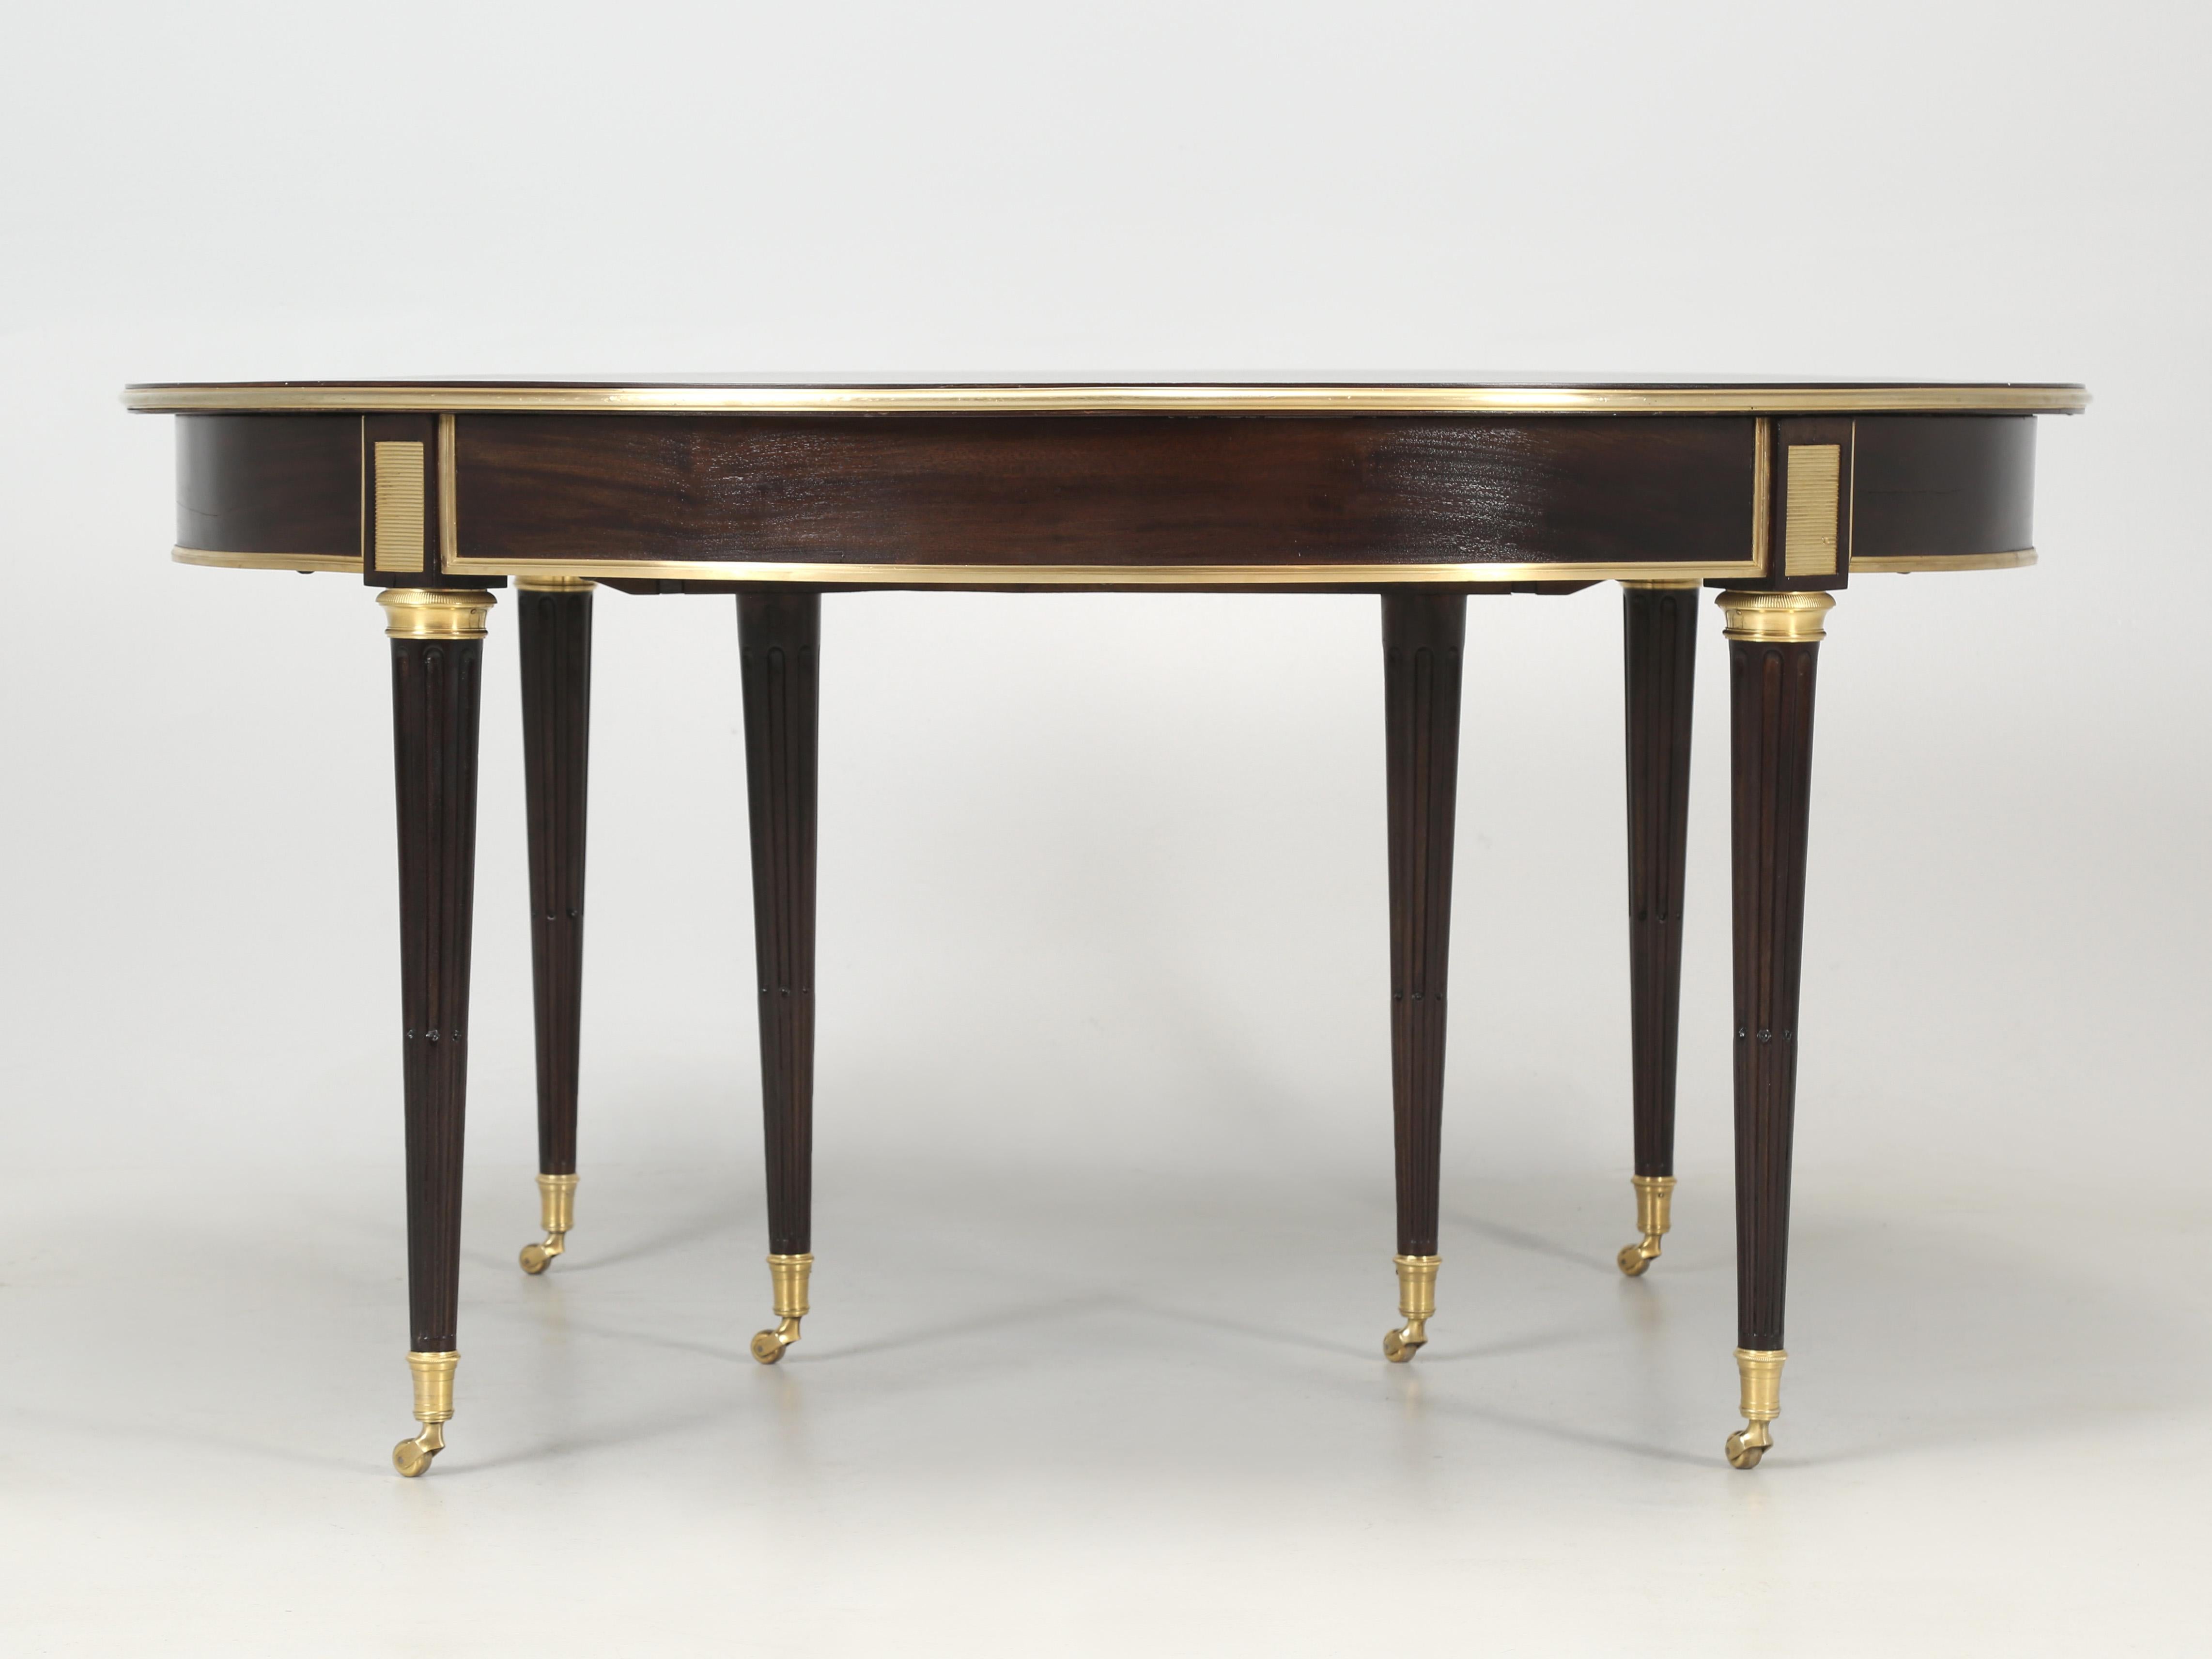 À première vue, on pourrait croire que cette table à manger en acajou n'est qu'une autre table à manger française de style Louis XVI en placage d'acajou des années 1940-1960. En regardant de plus près, vous verrez une table à manger française